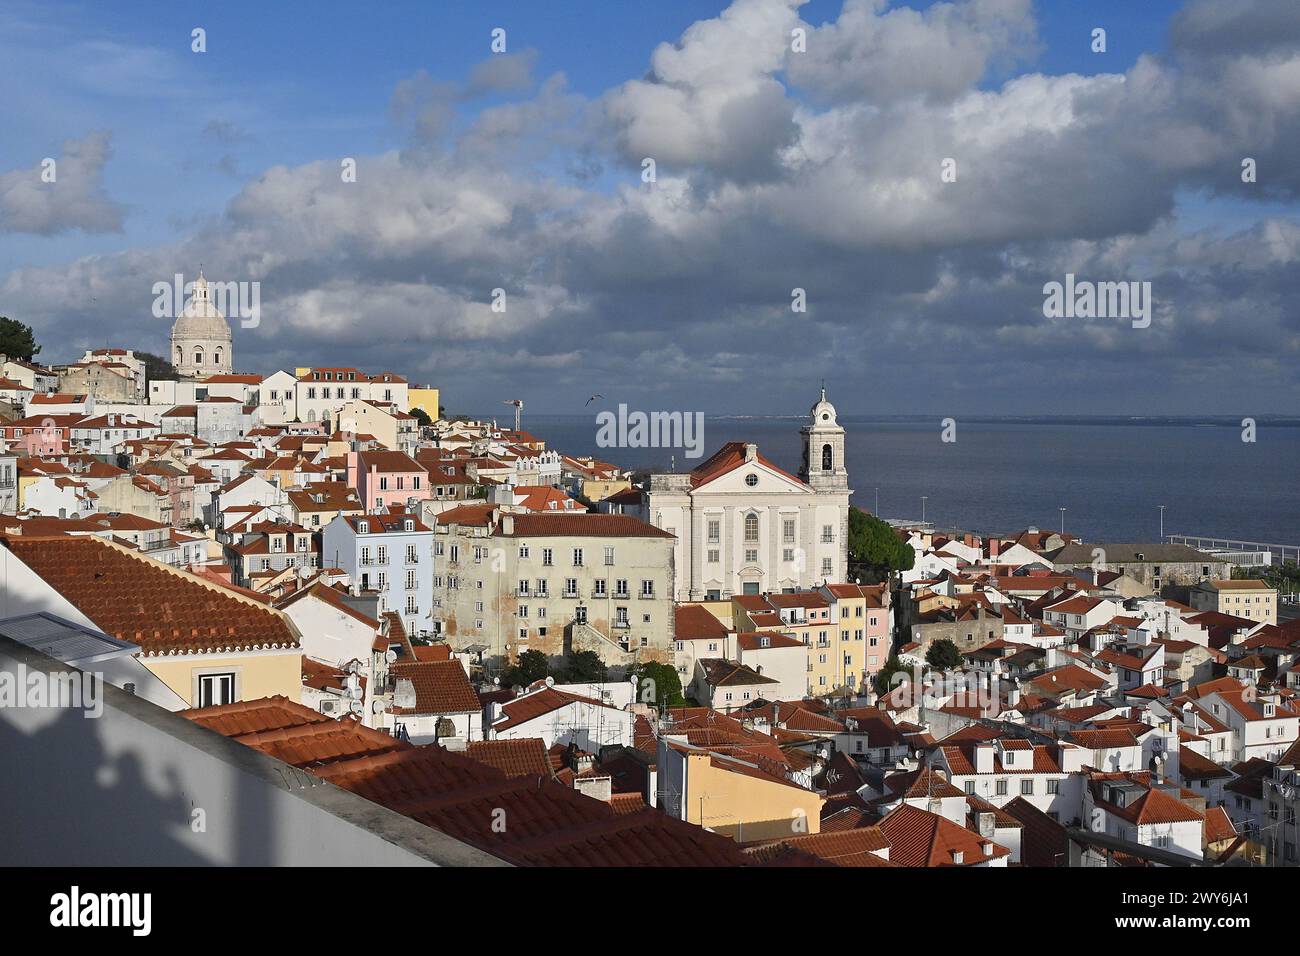 Portogallo, Lisbona: Panoramica del quartiere di Alfama, della Chiesa di Santo Estevao e del fiume Tago dal belvedere di Portas do Sol. Dietro Foto Stock